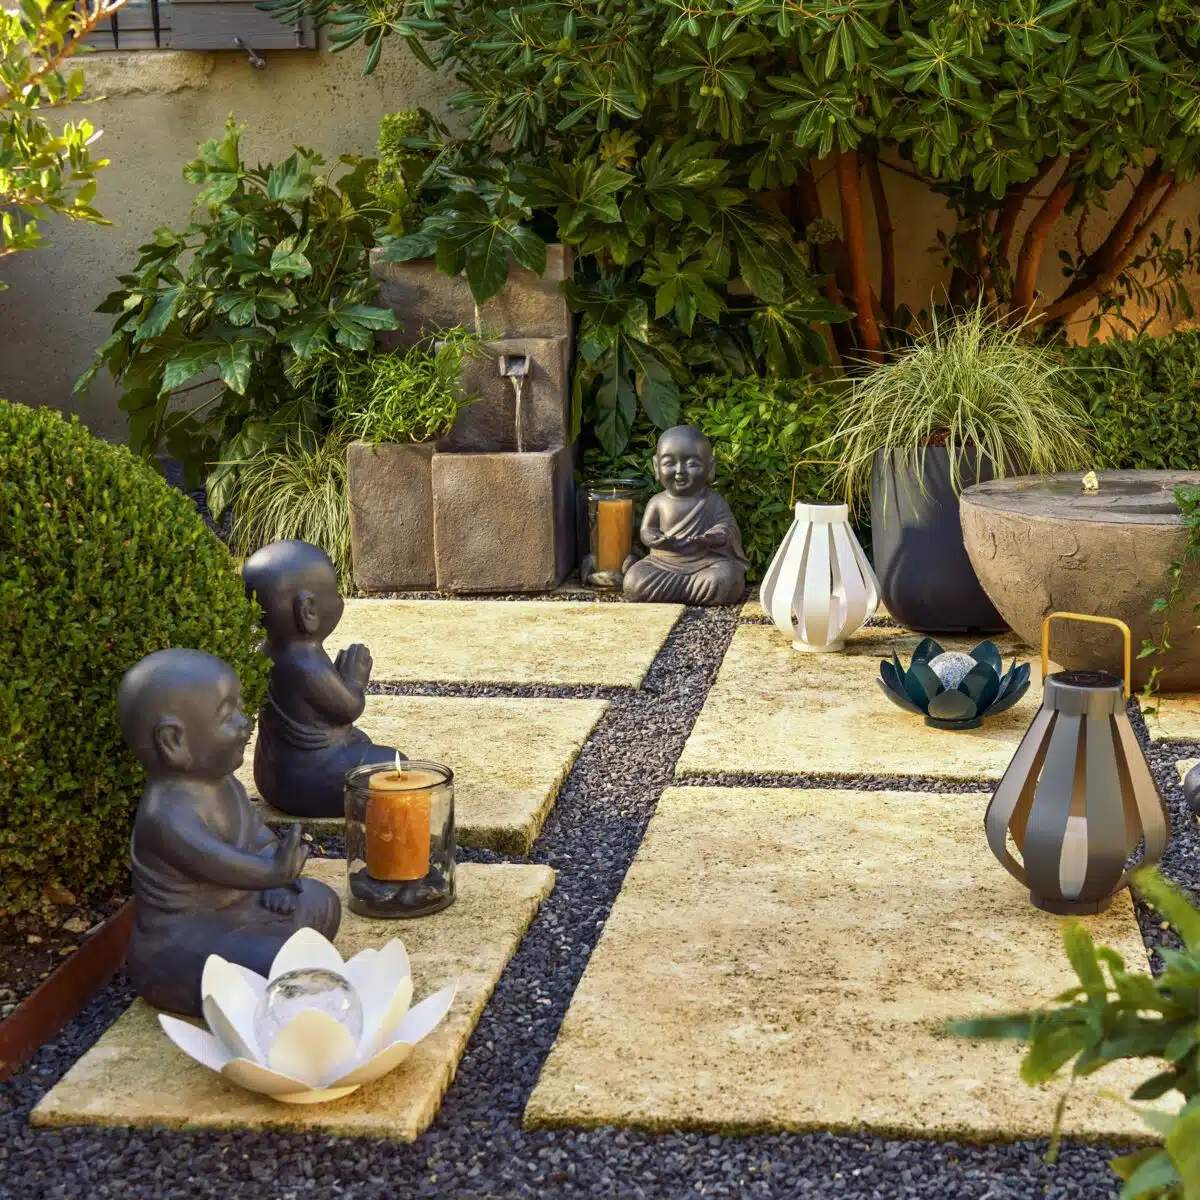 Comment aménager son jardin pour créer une atmosphère zen et relaxante